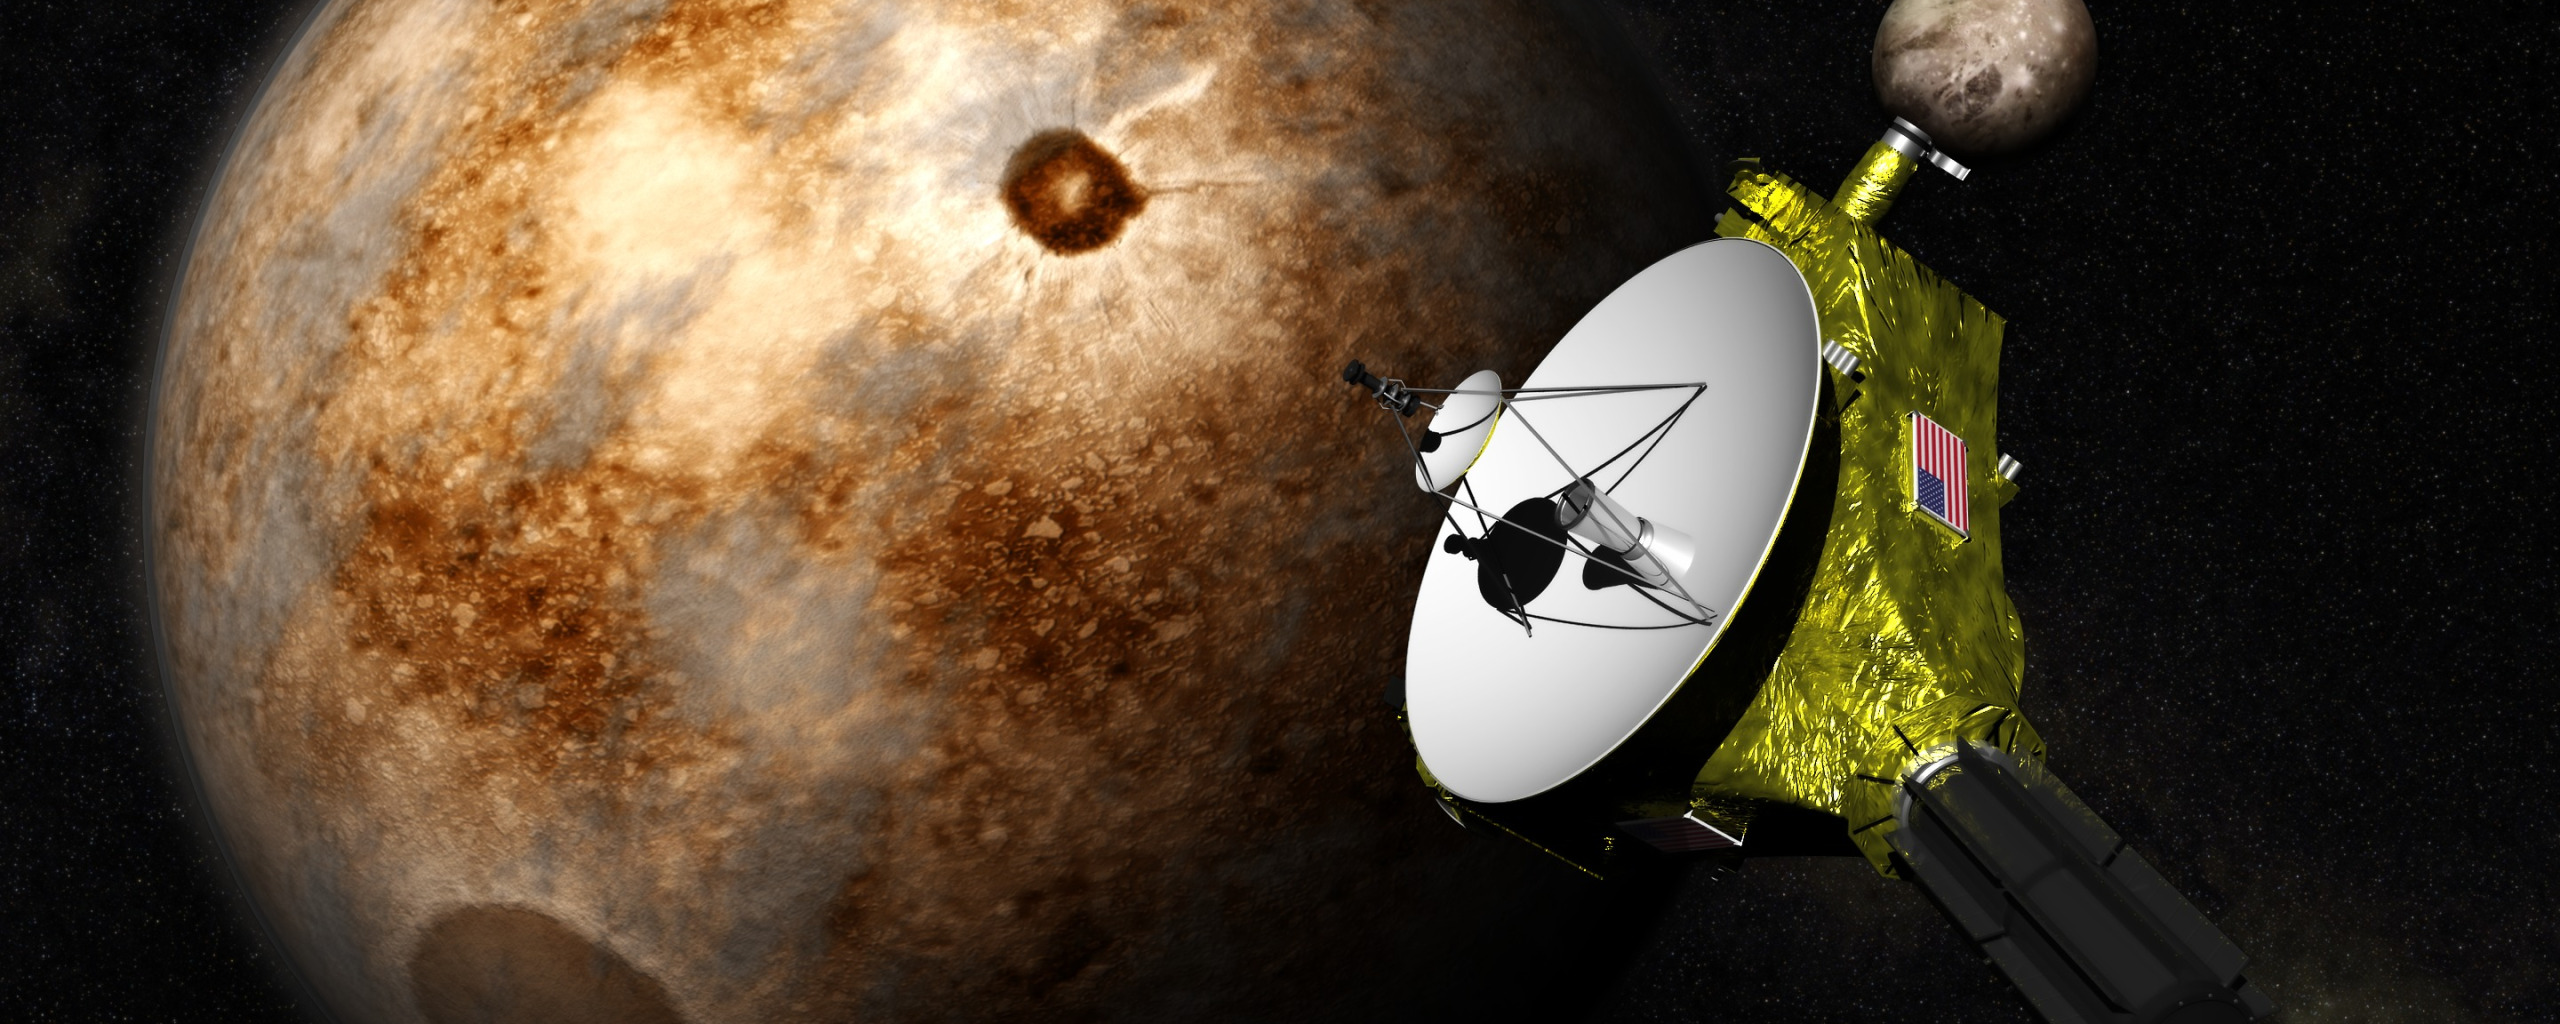 Новые горизонты ответы. Зонд New Horizons. Автоматическая межпланетная станция «новые горизонты». New Horizons космический аппарат. New Horizons Плутон.